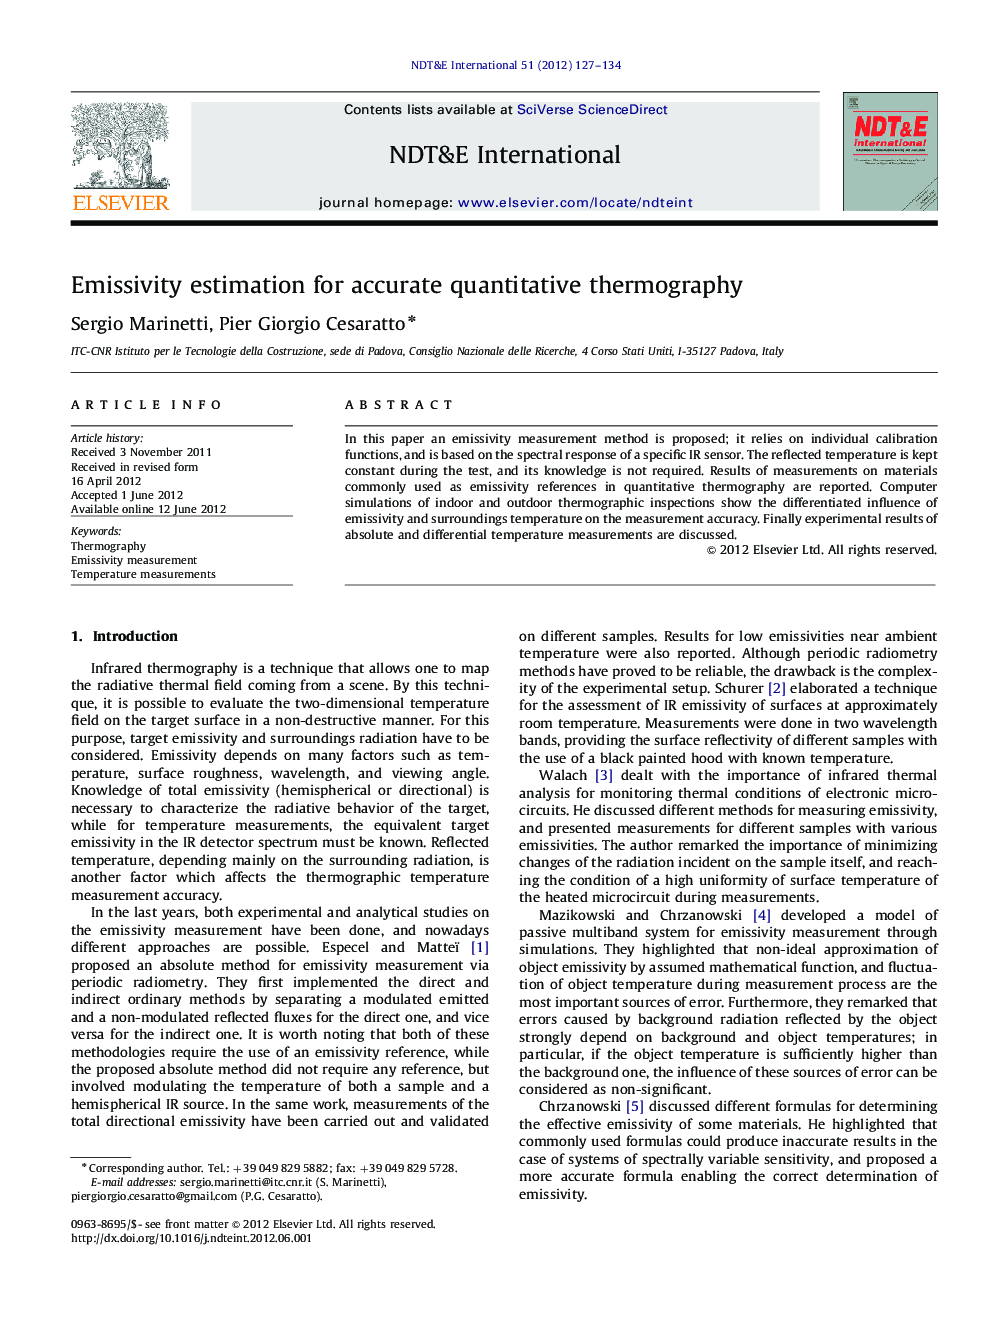 Emissivity estimation for accurate quantitative thermography